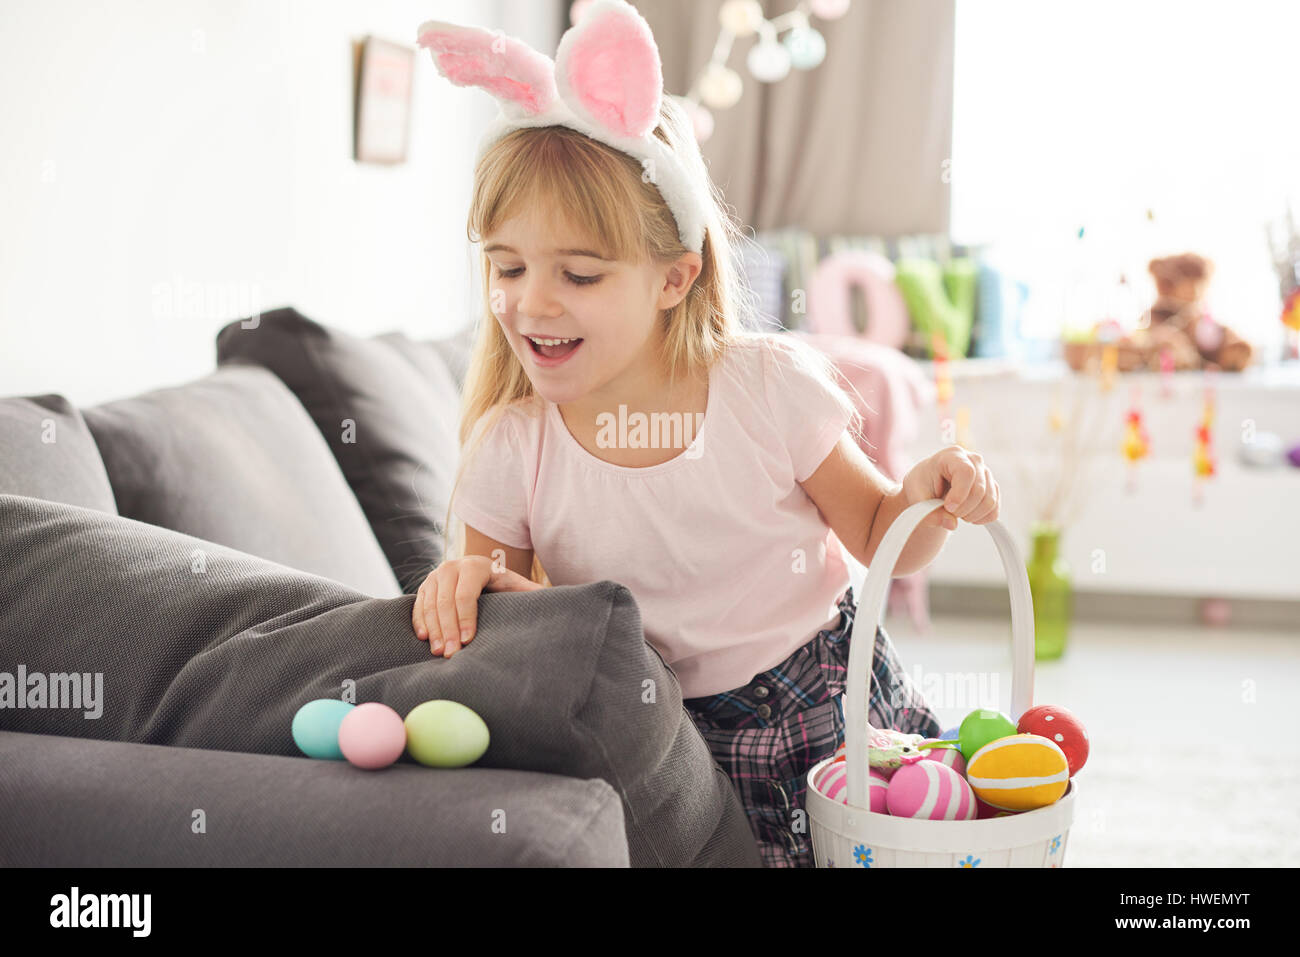 Girl finding easter eggs on sofa Stock Photo